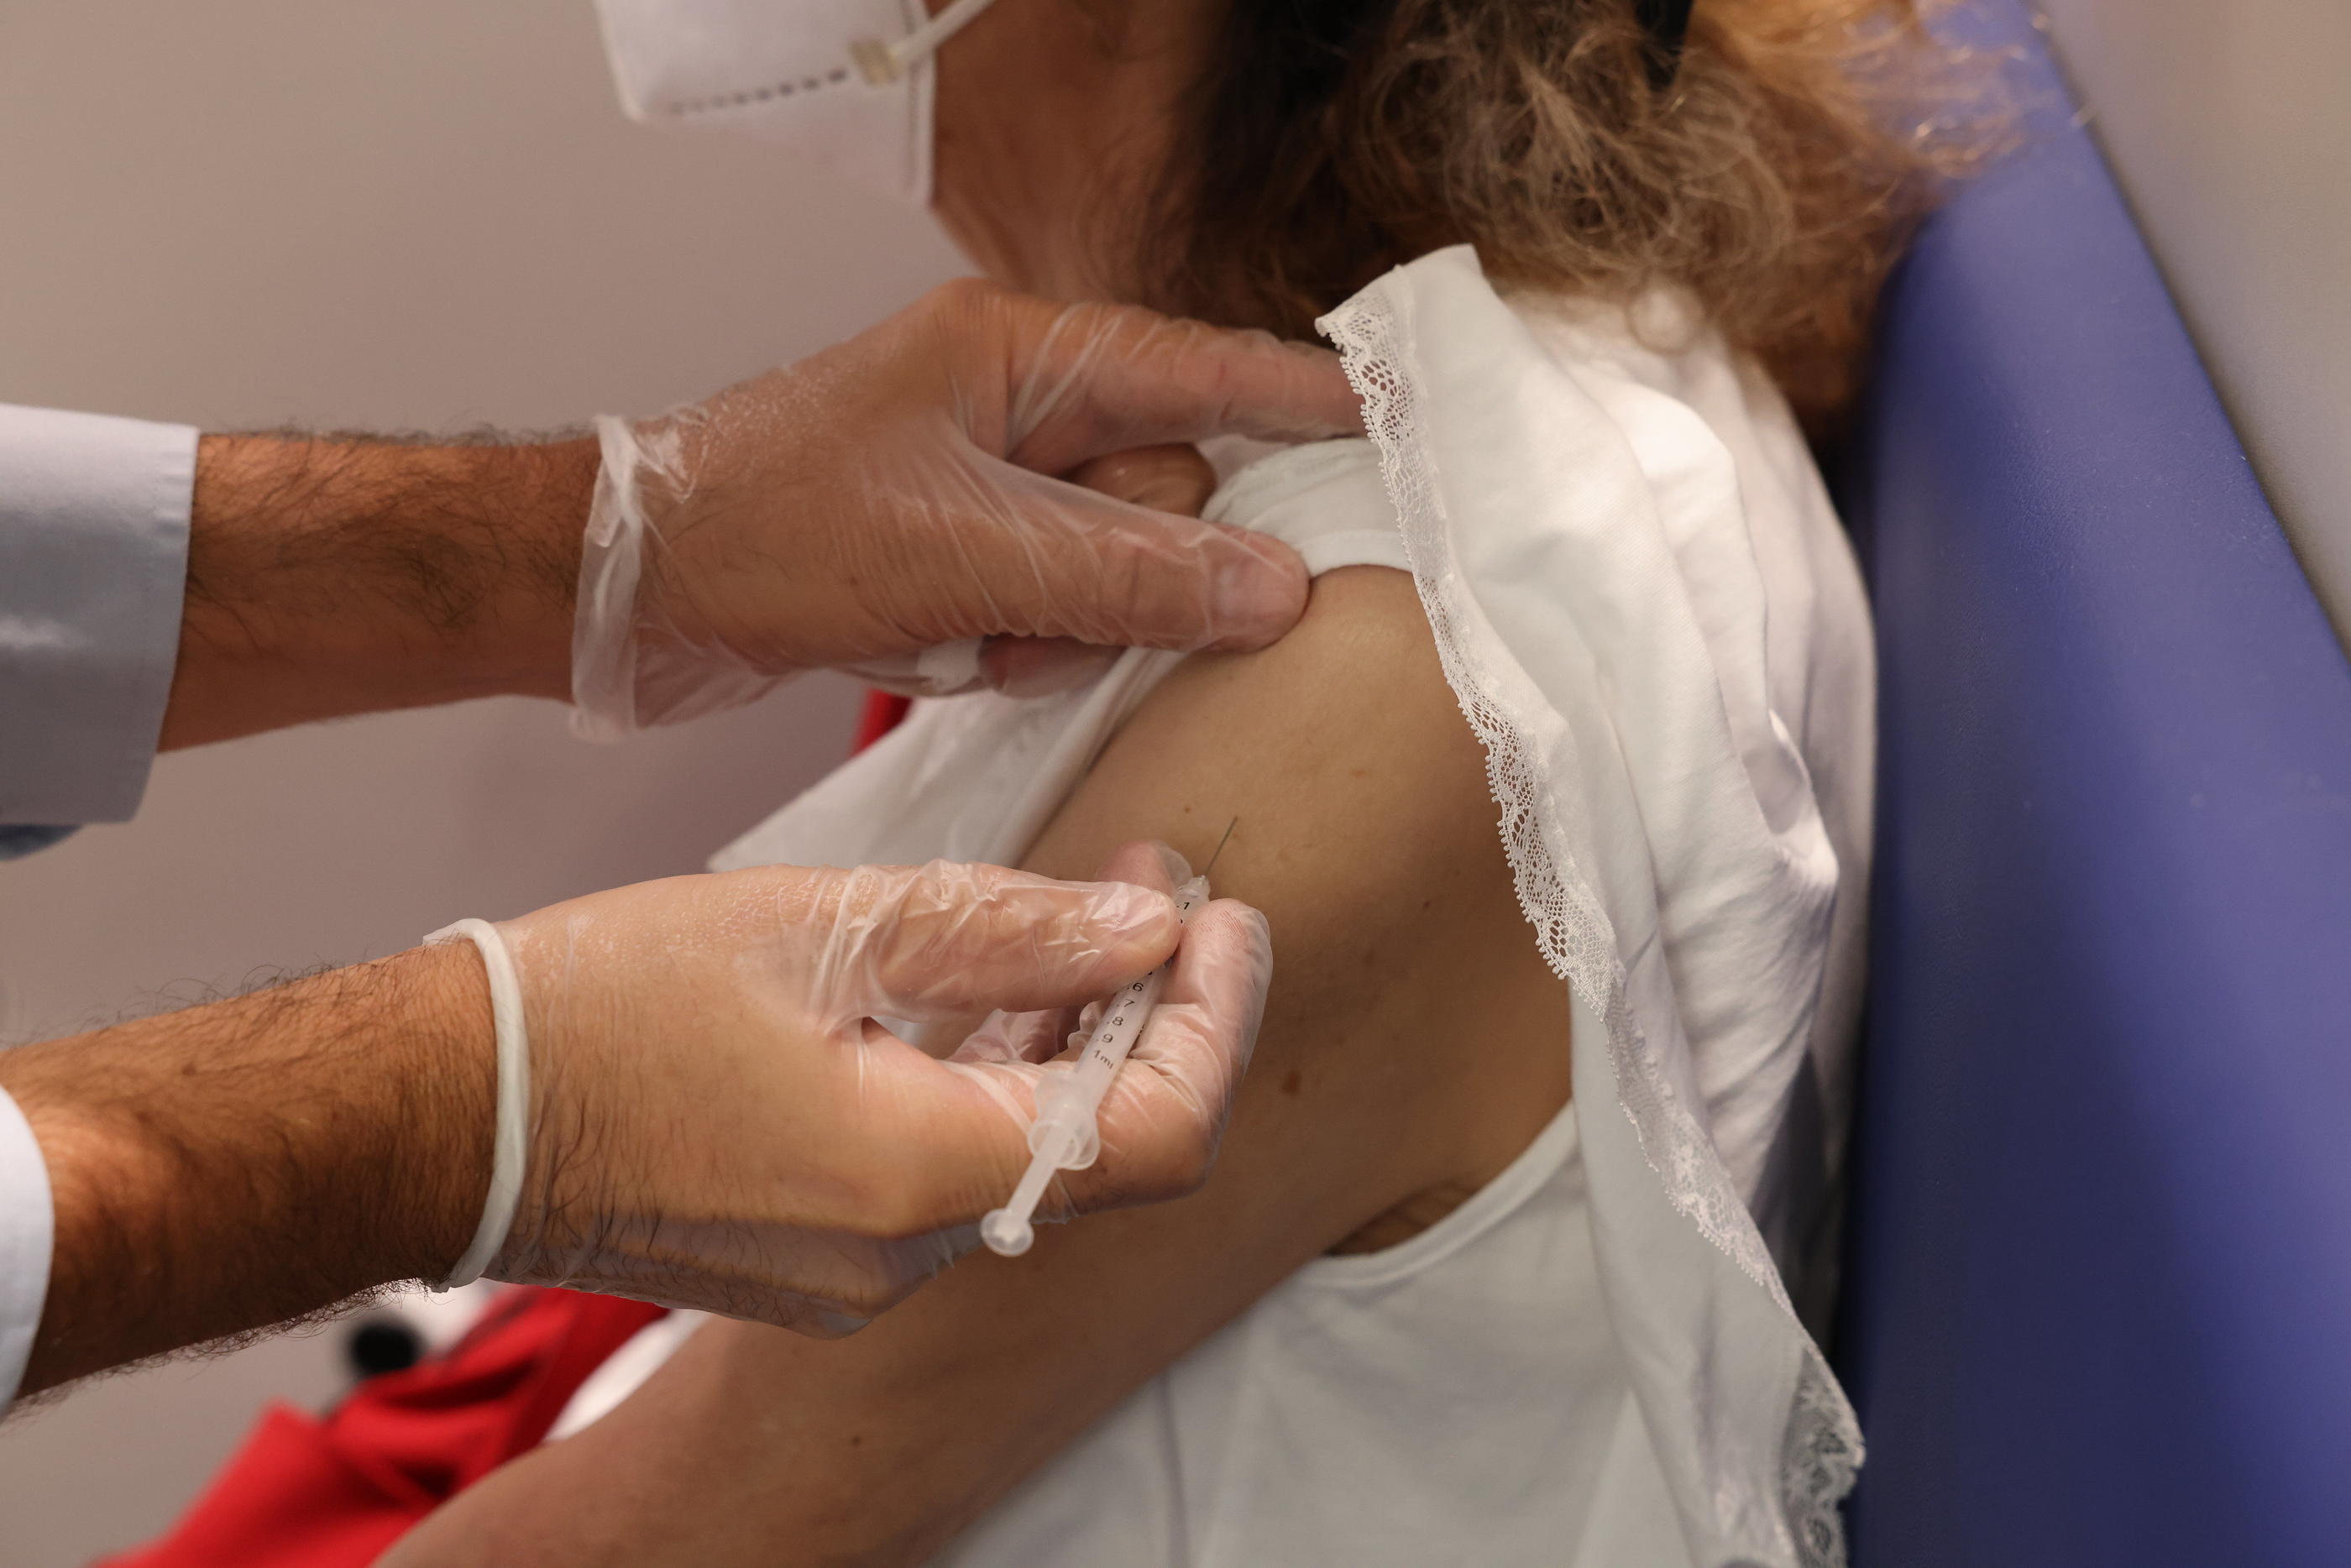 Plus de 1 000 demandes d'indemnisation après un vaccin contre le Covid-19 ont été déposées auprès de l’Organisme national d’indemnisation des accidents médicaux. LP/Olivier Lejeune